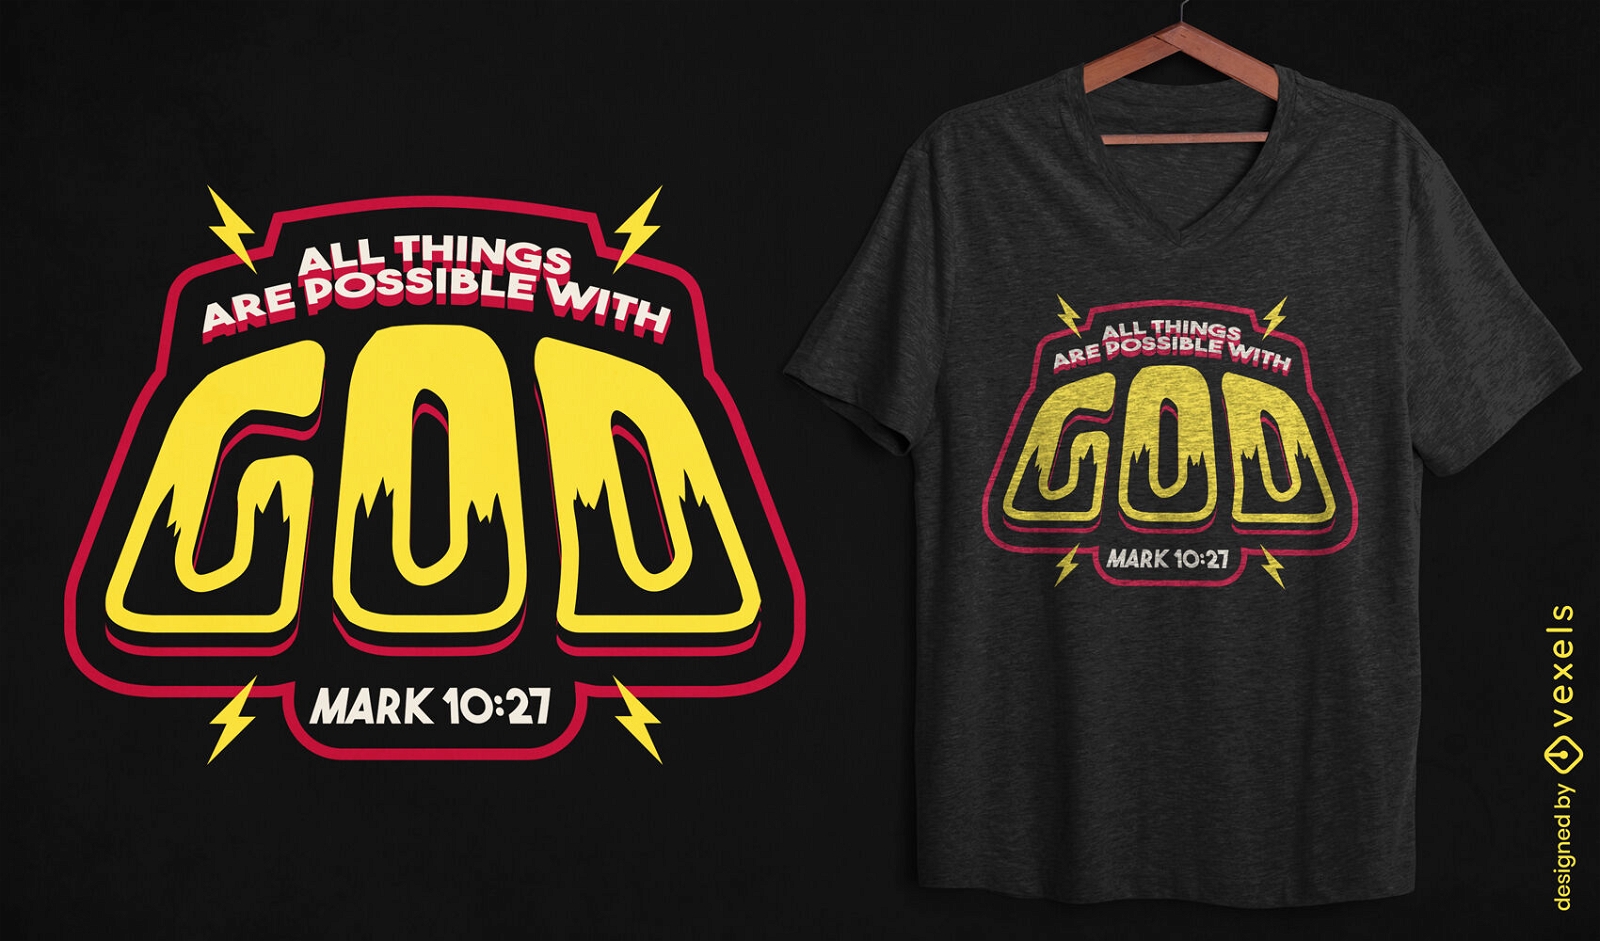 God inspirational quote t-shirt desgin 